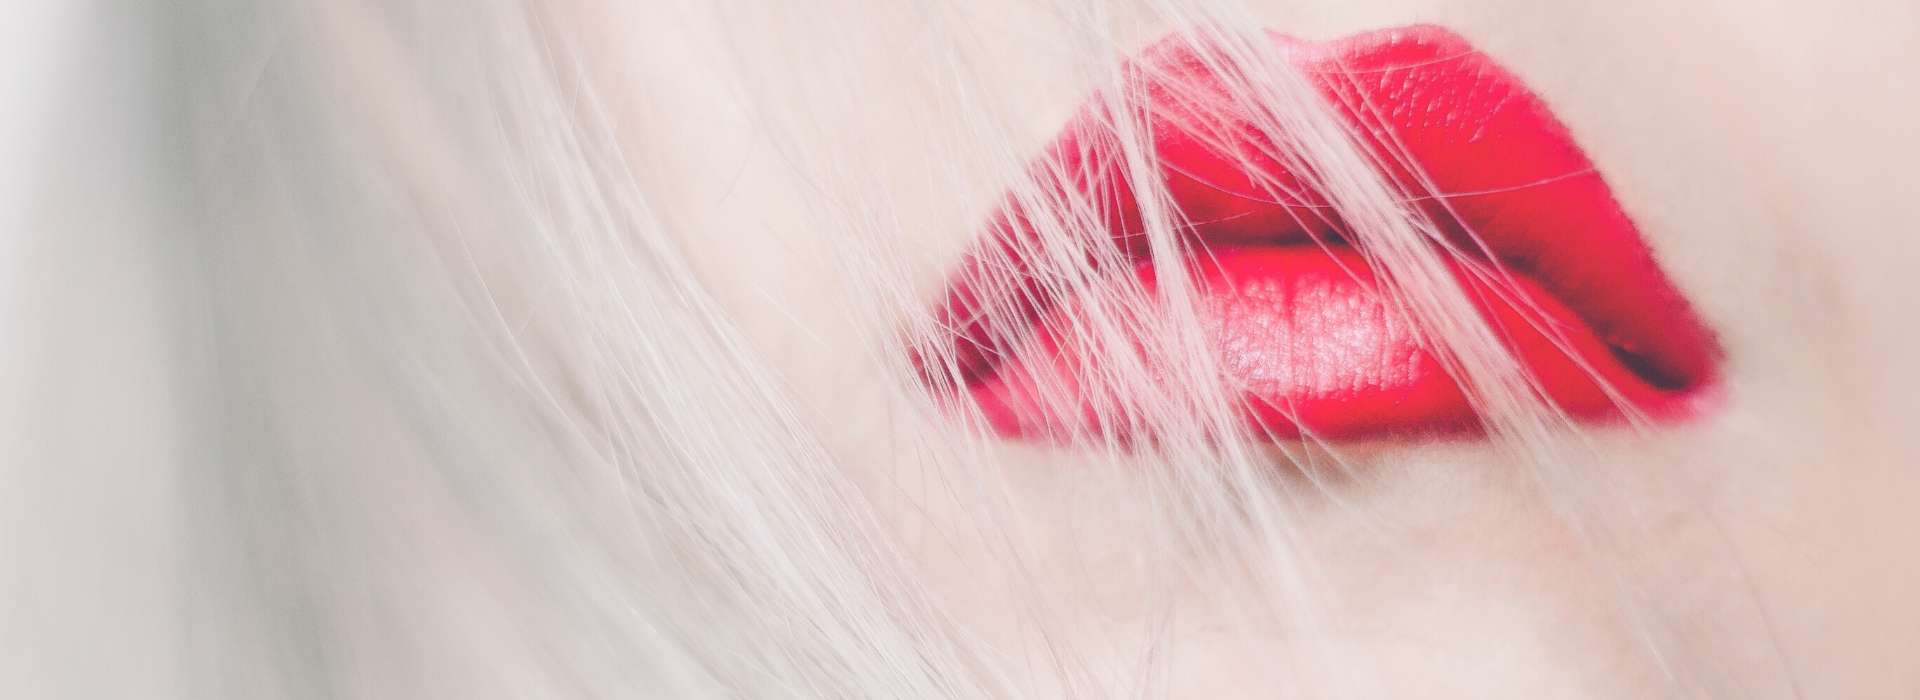 Visage d'une femme avec du rouge à lèvre sexy